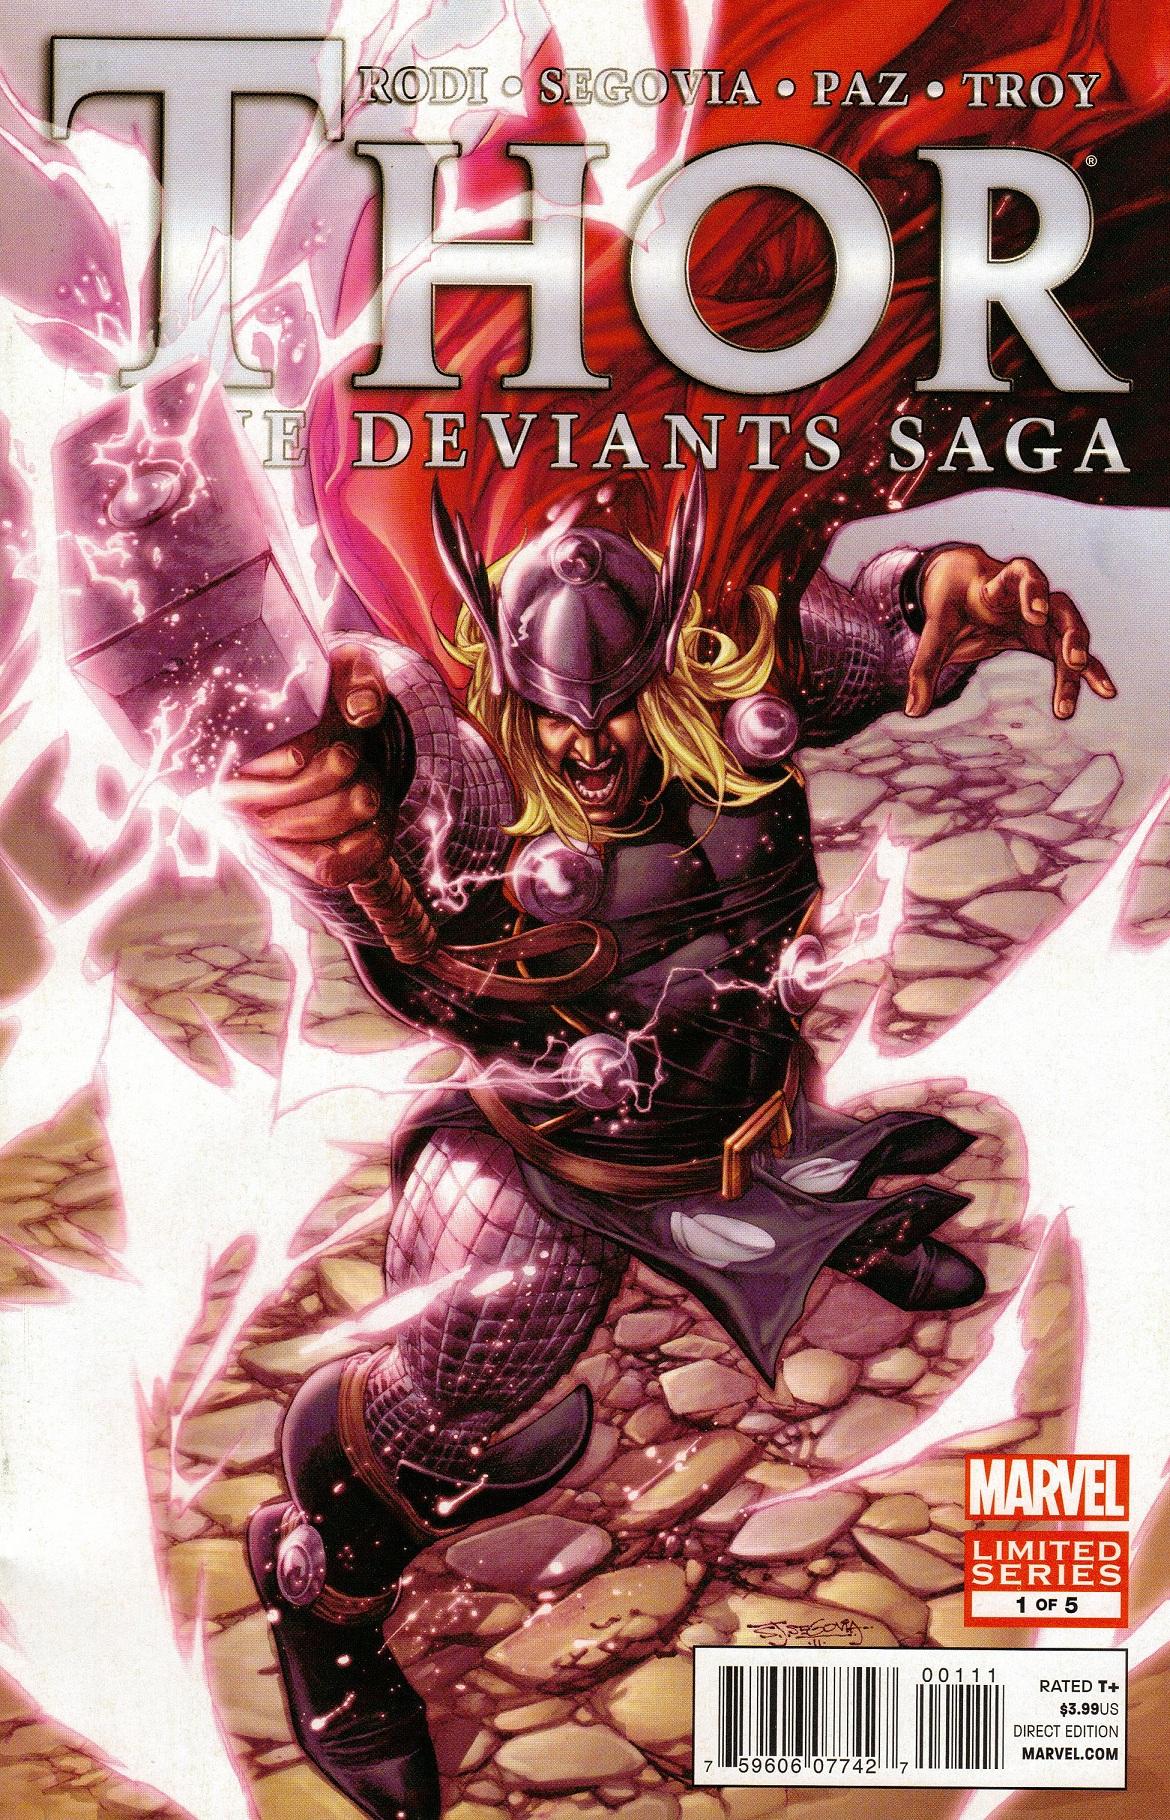 Thor: The Deviants Saga Vol. 1 #1